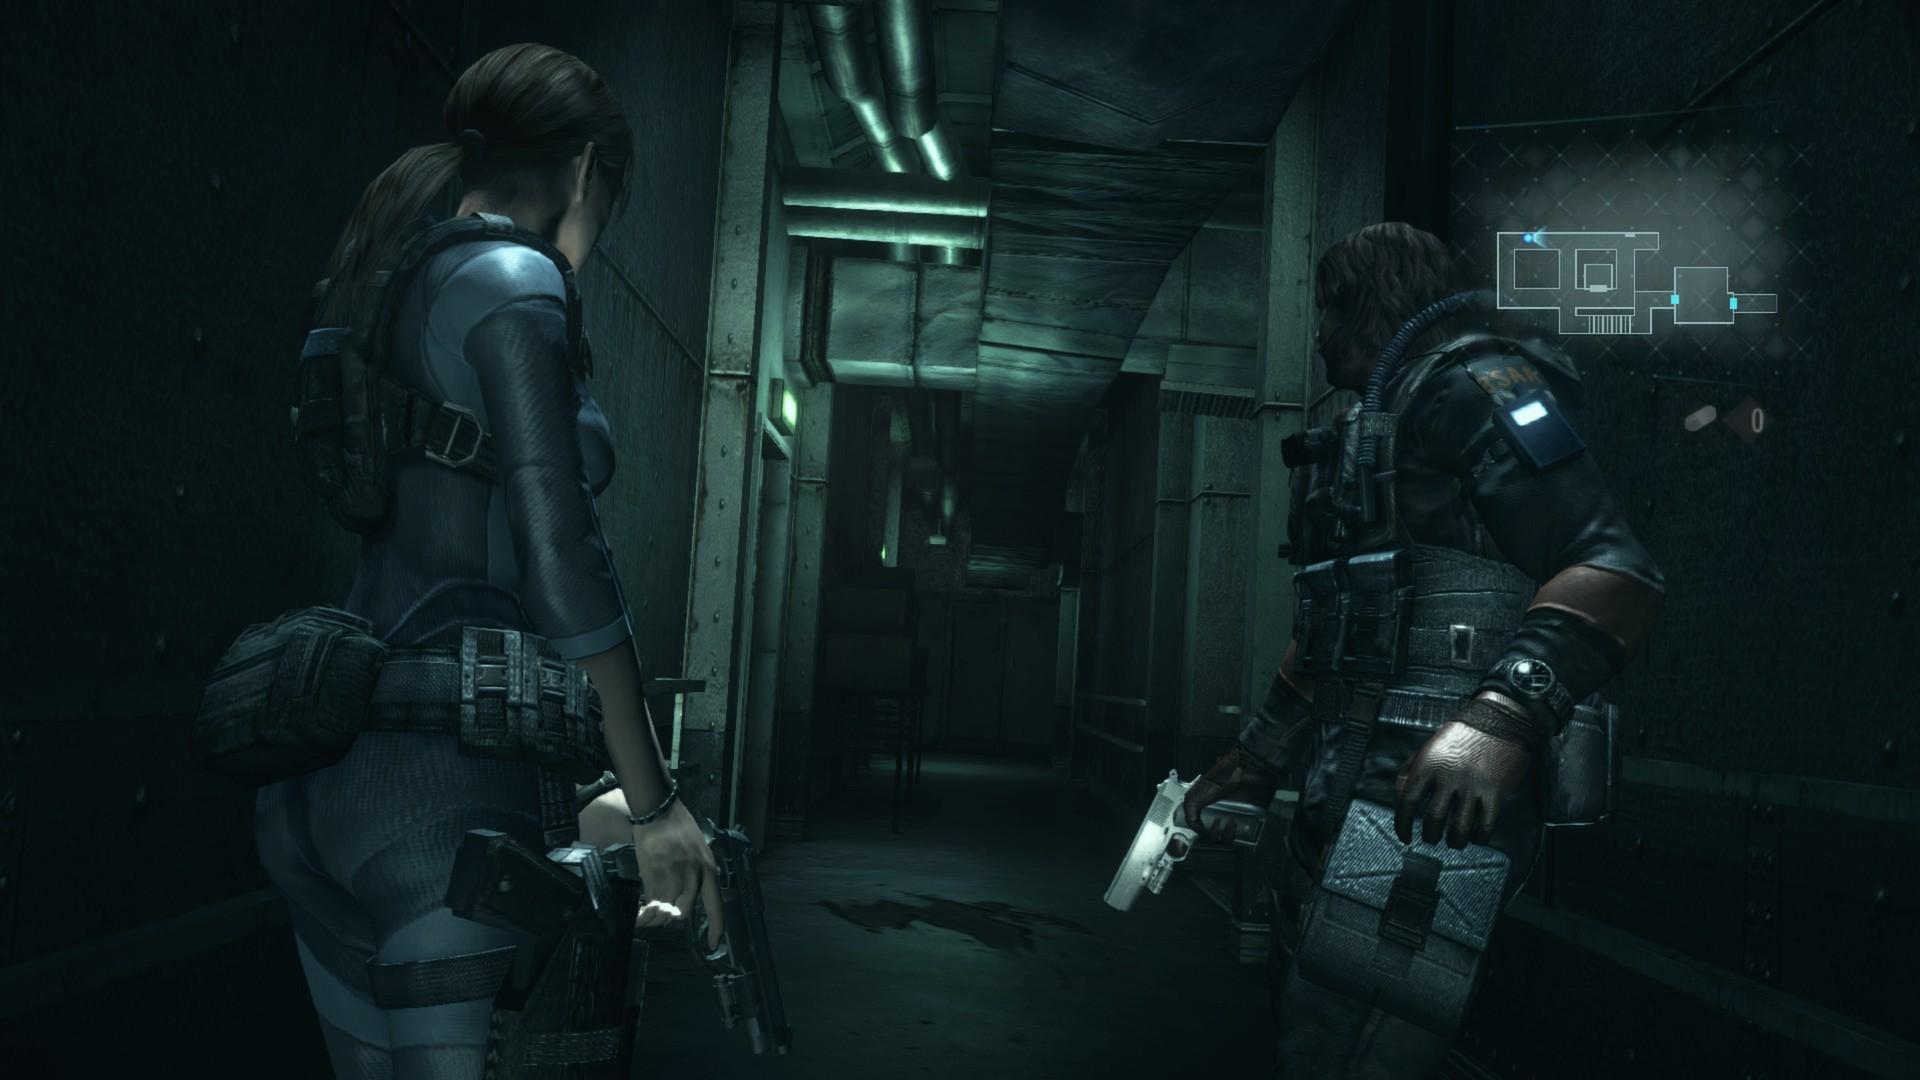 Screenshot №1 from game Resident Evil Revelations